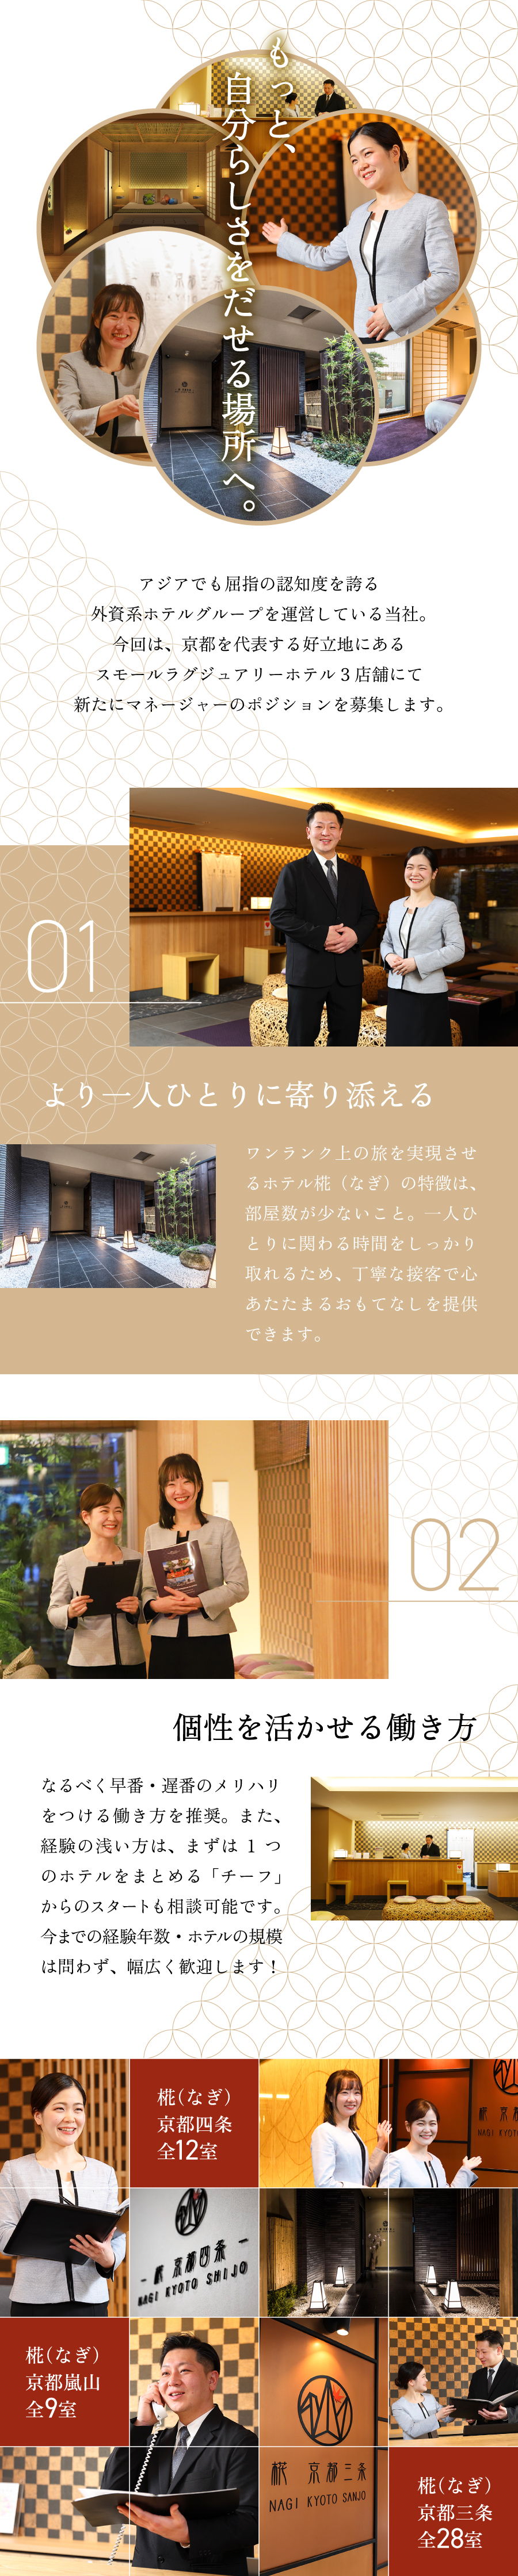 京都ホテルオペレーションズ合同会社からのメッセージ